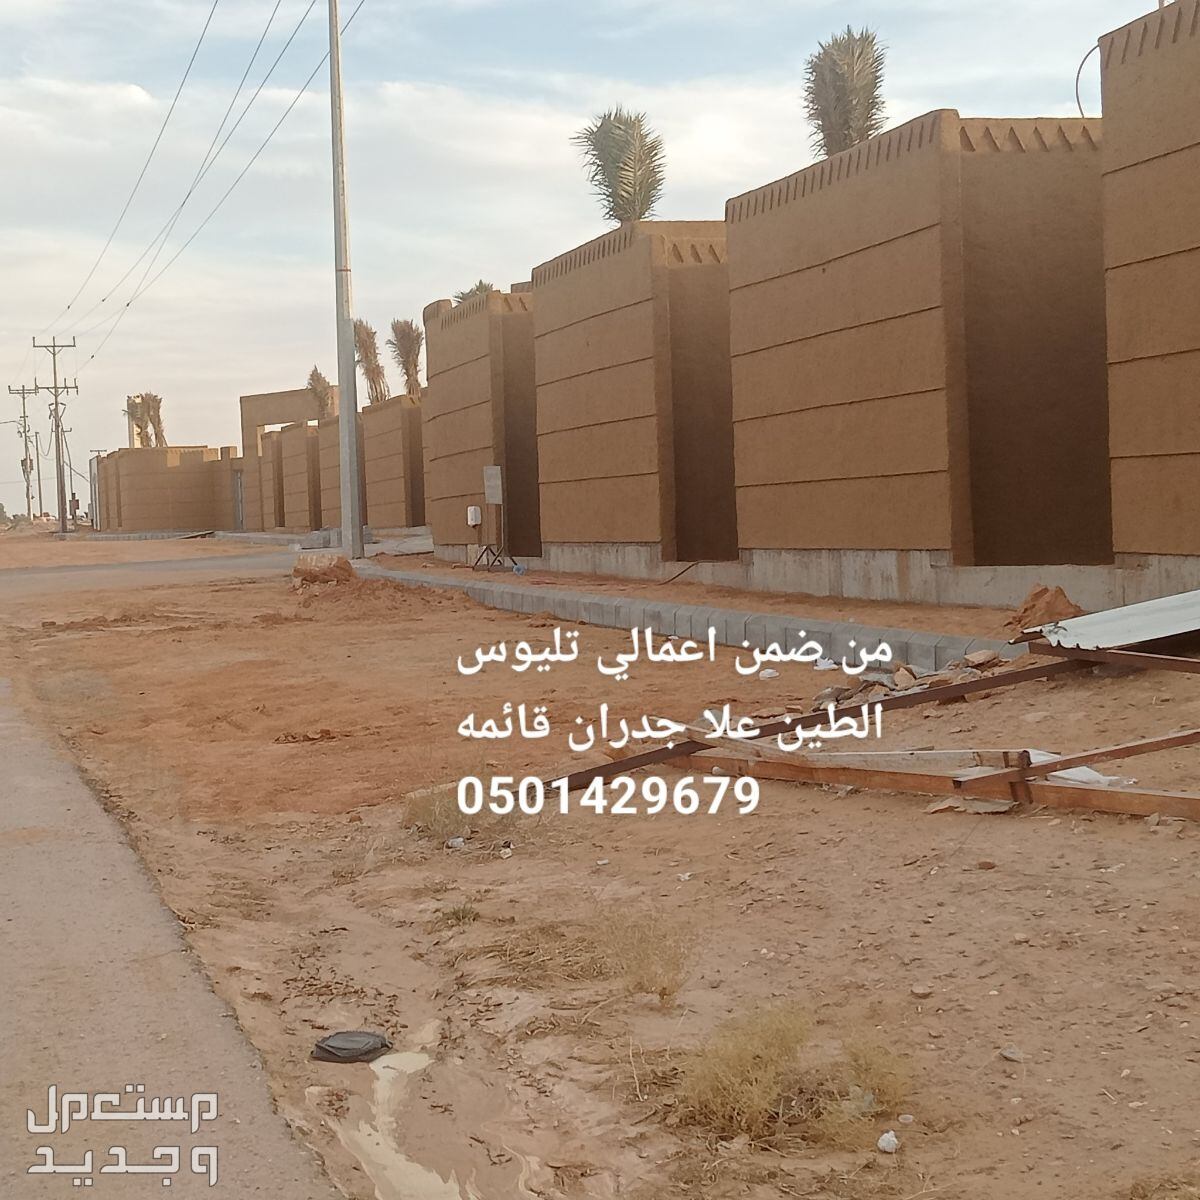 مقاول تراث وجميع اعمال الطين والحجر  في الرياض بسعر 0000 ريال سعودي